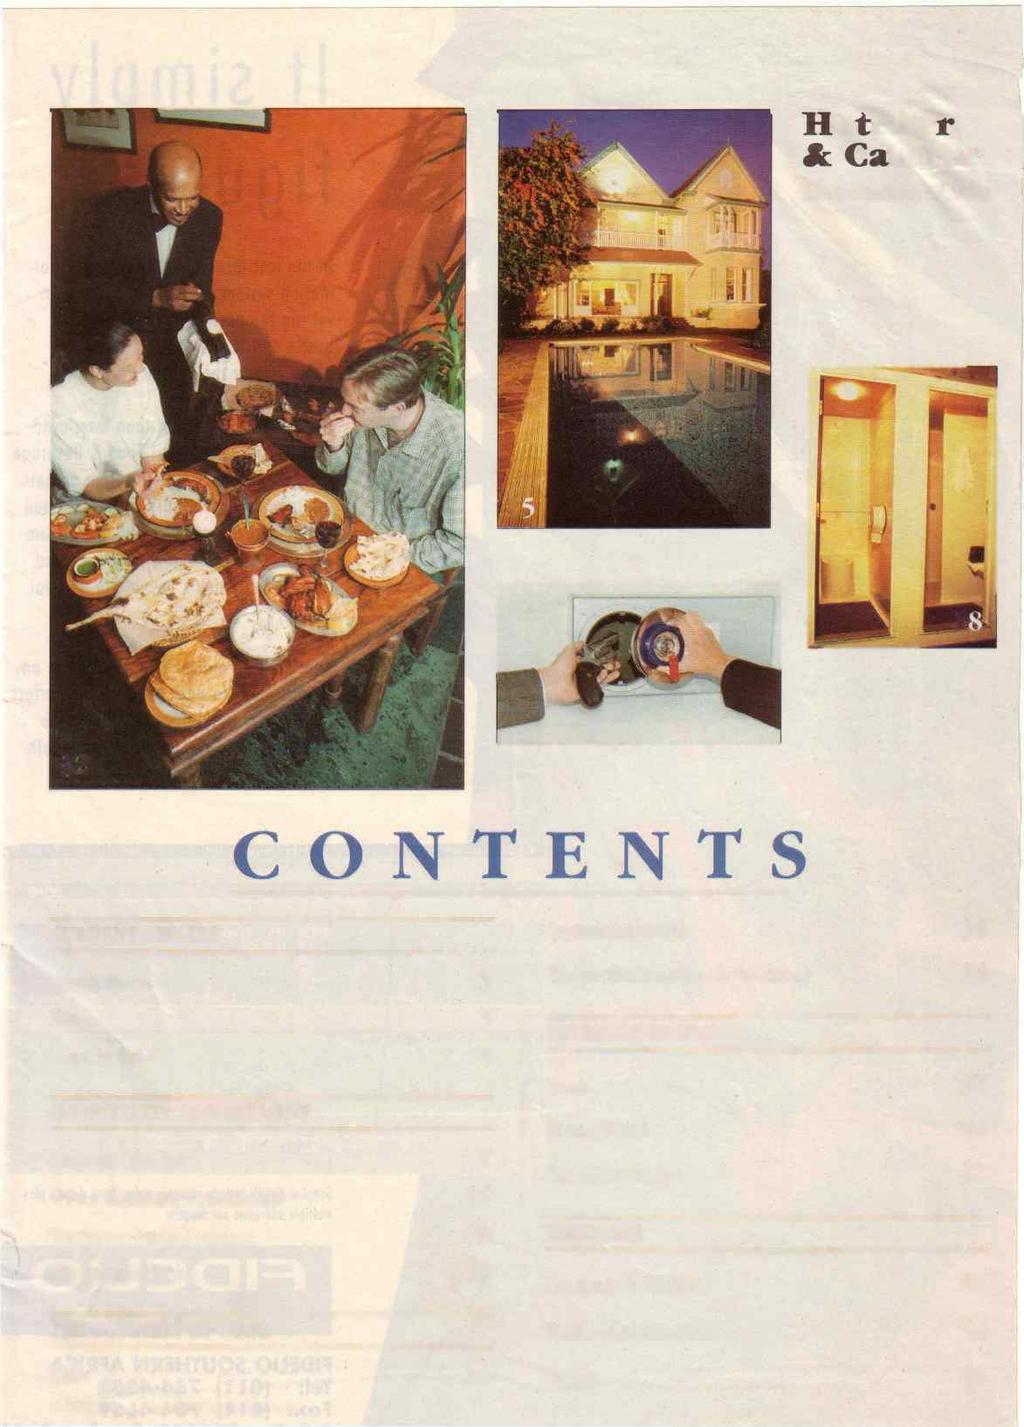 Hotelier &. Caterer December 1996 12 c.